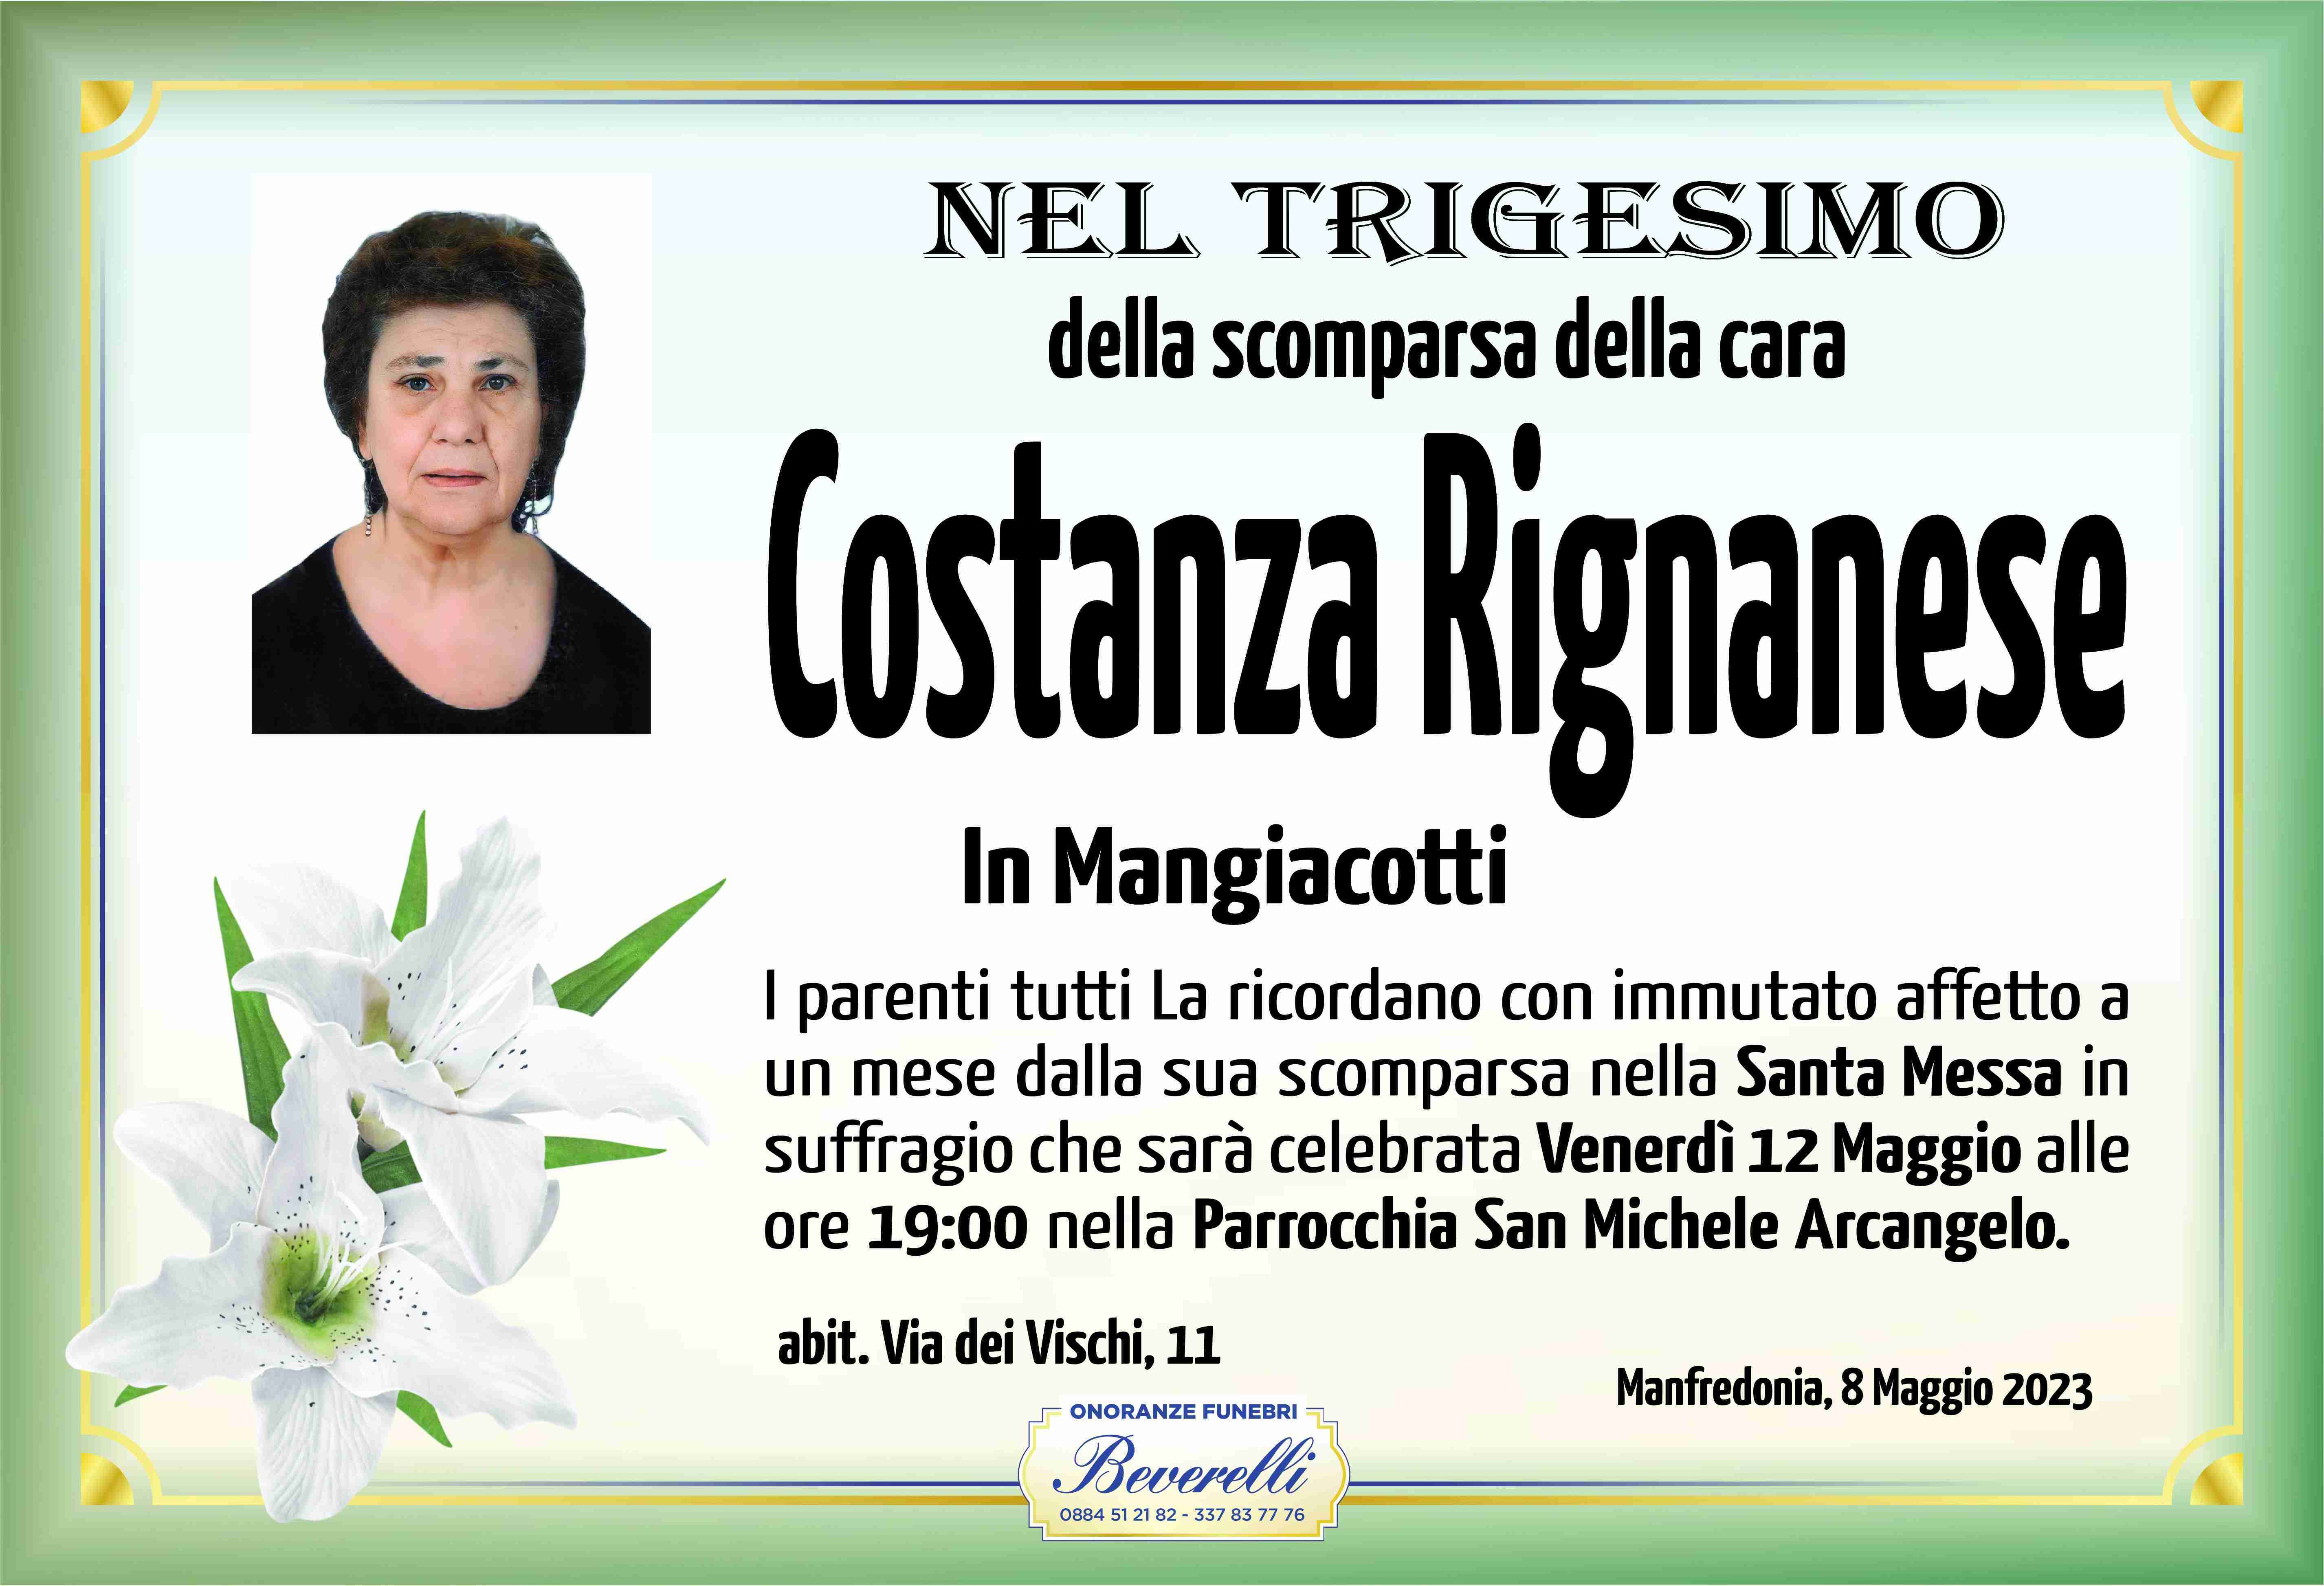 Costanza Rignanese